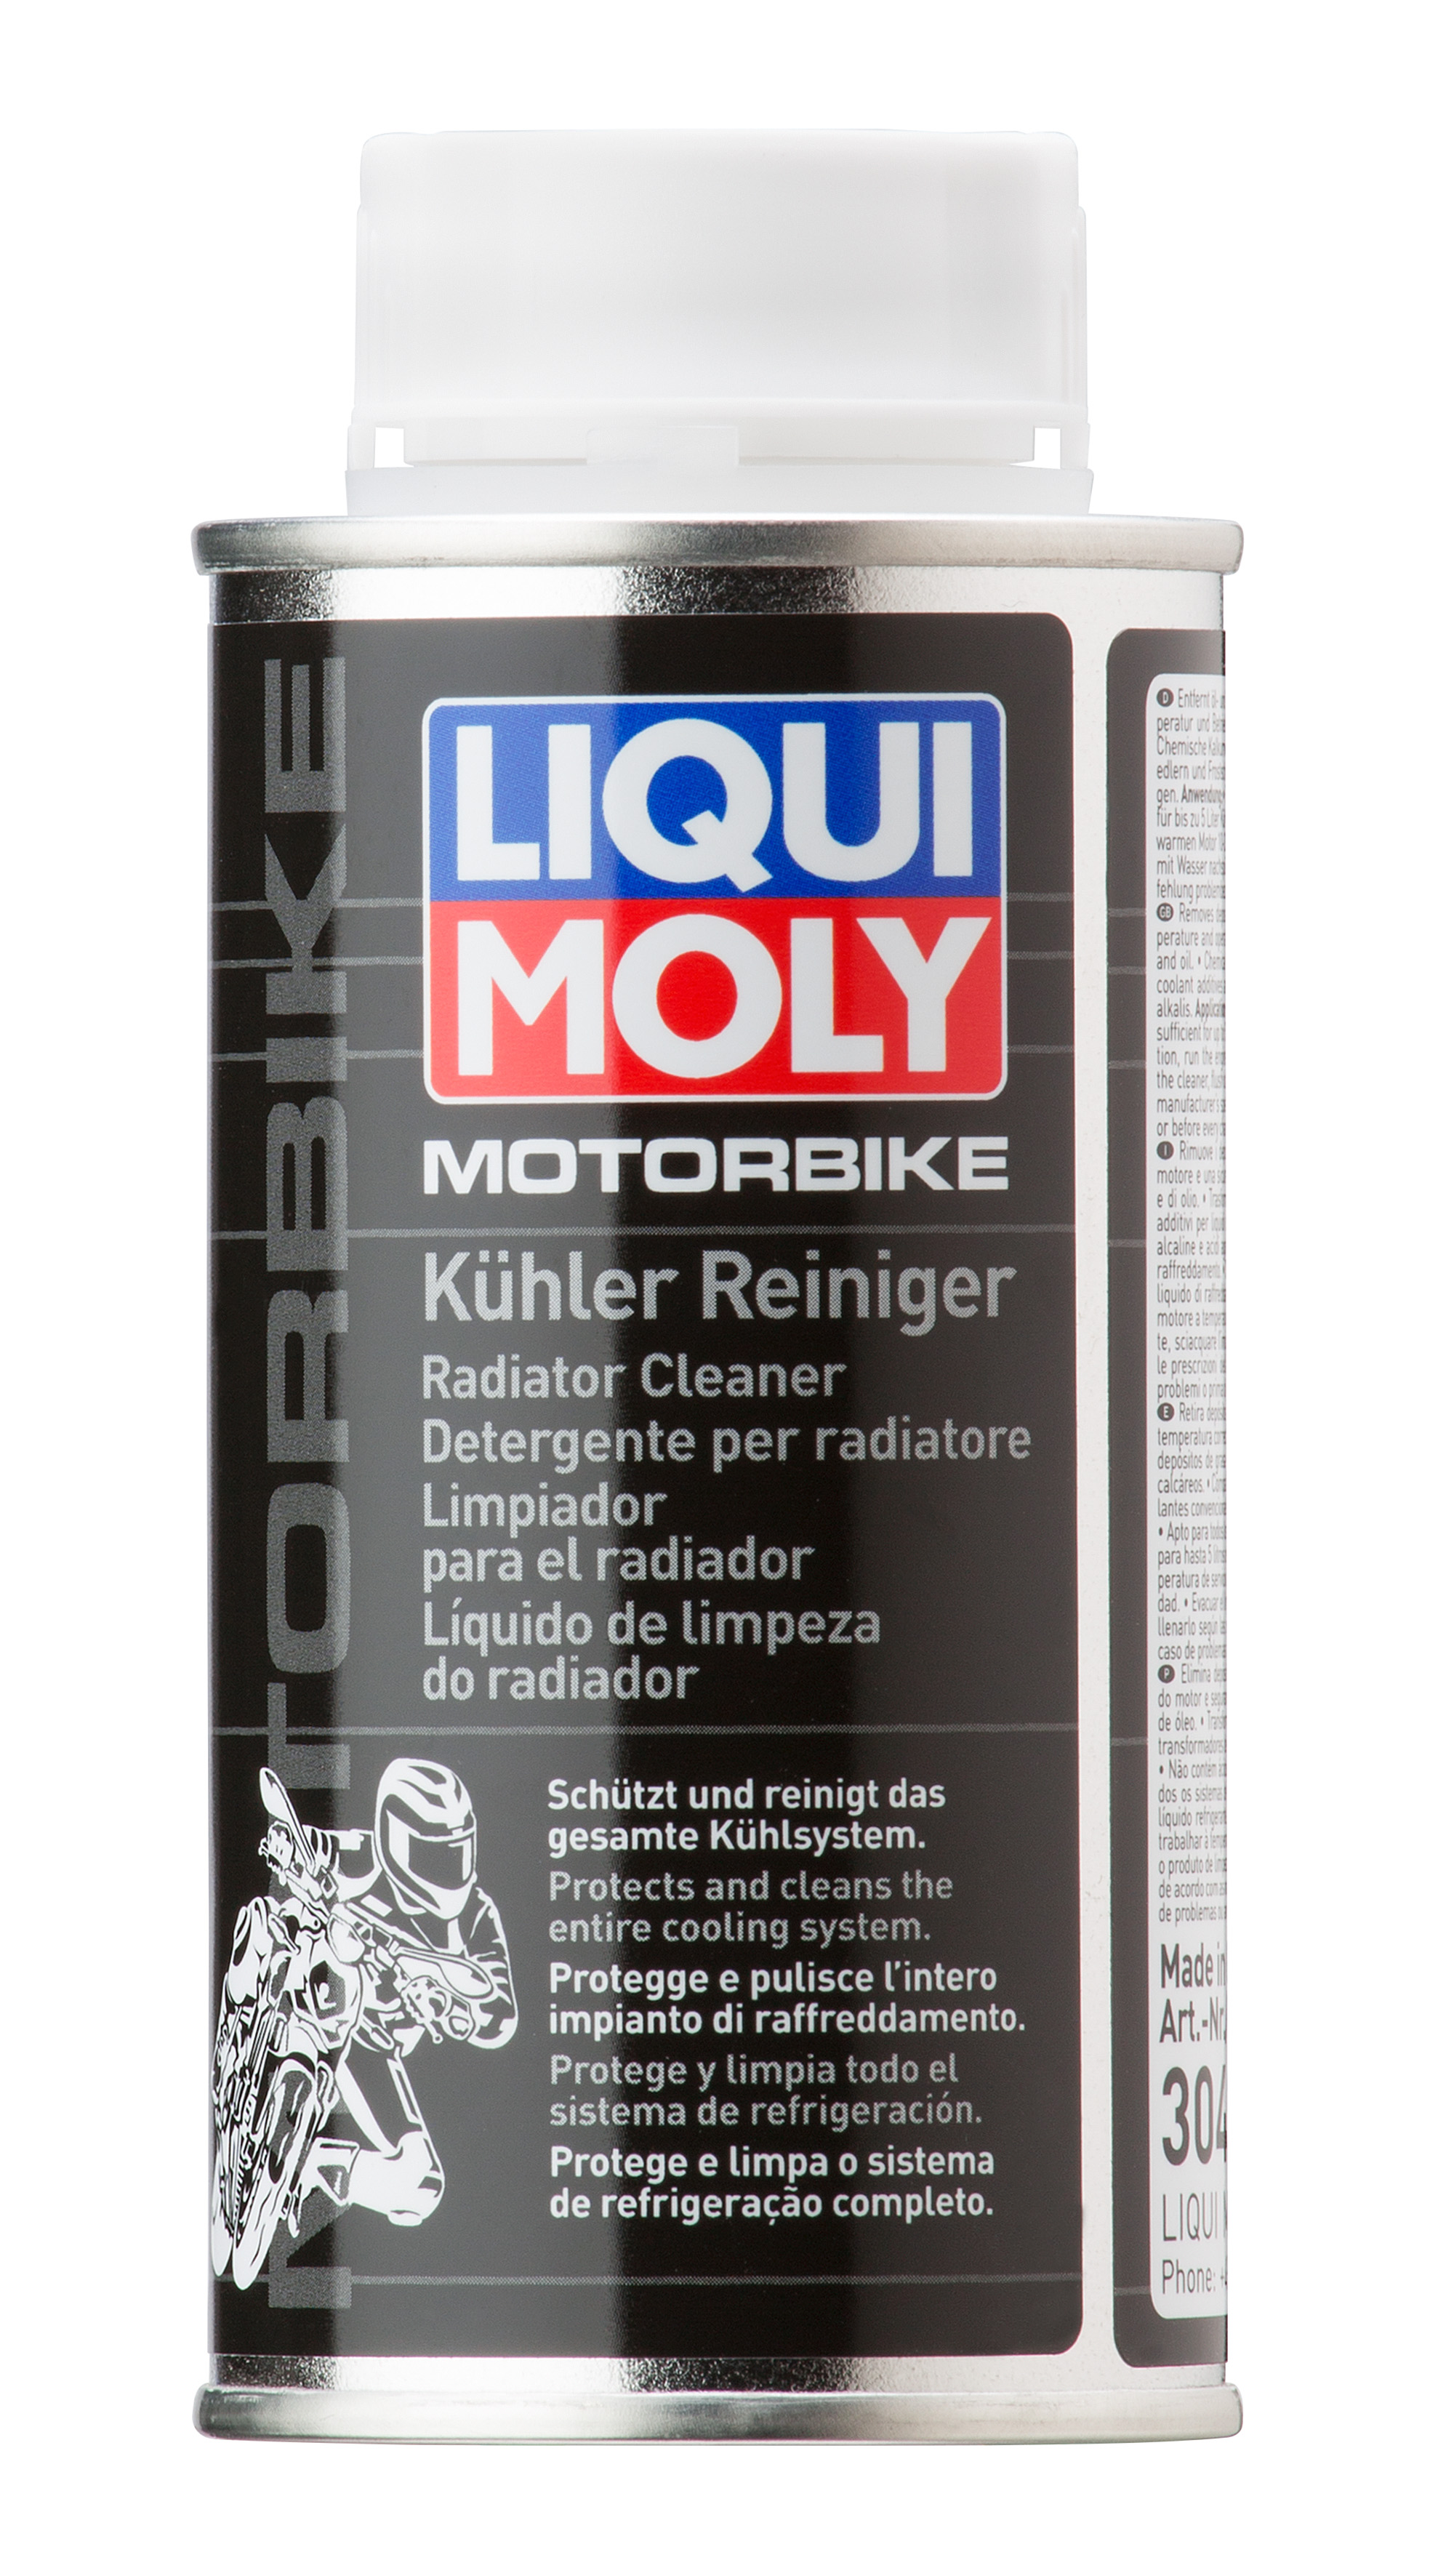 Очиститель системы охлаждения Motorbike Kuhler Reiniger, 150мл - Liqui Moly 3042